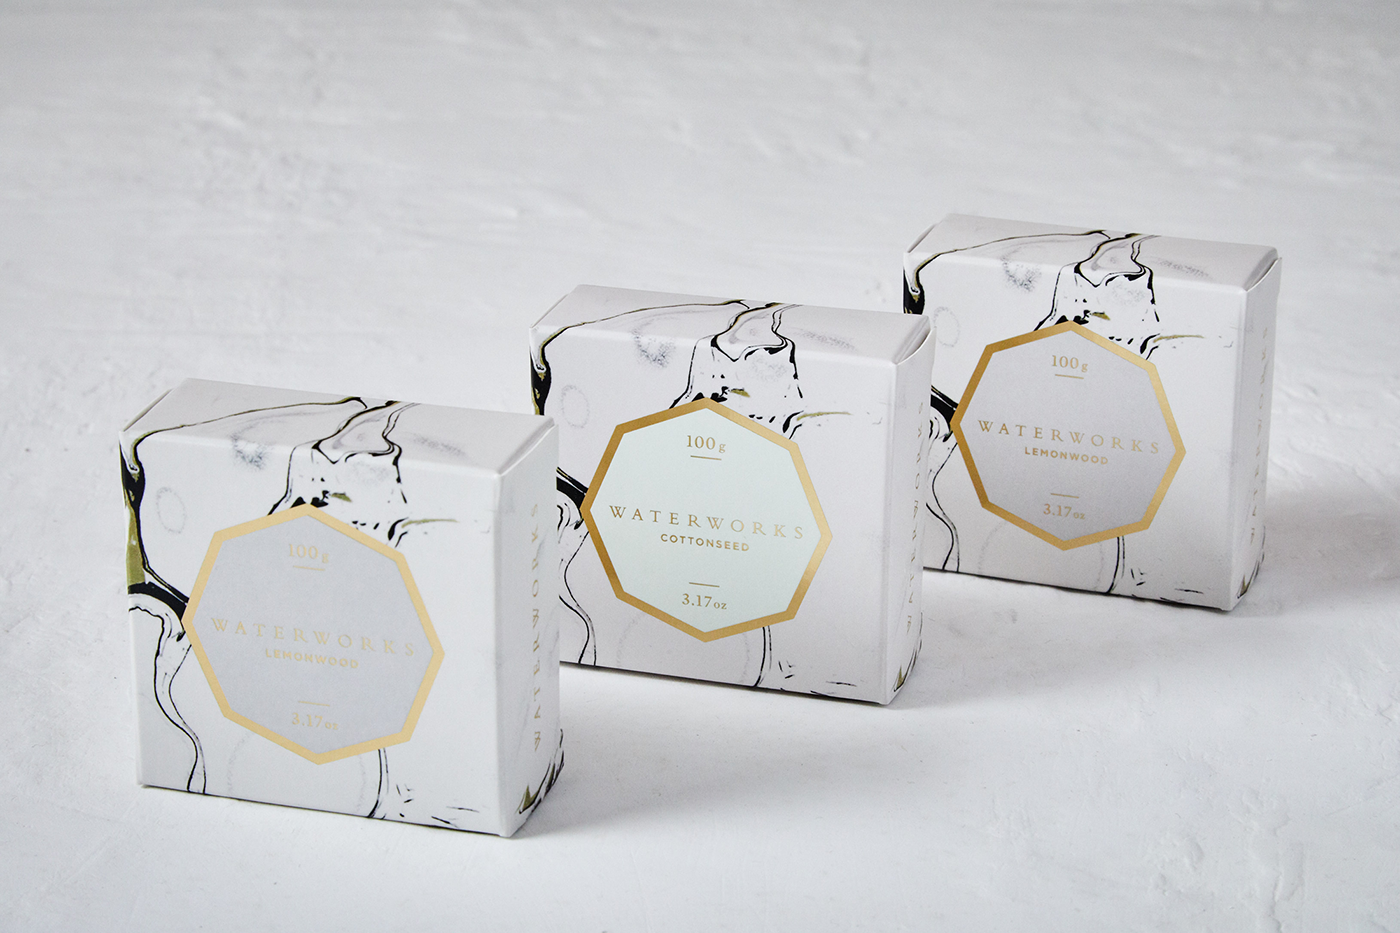 packaging design soap bottles labels candle packaging Cande vessel foil emboss